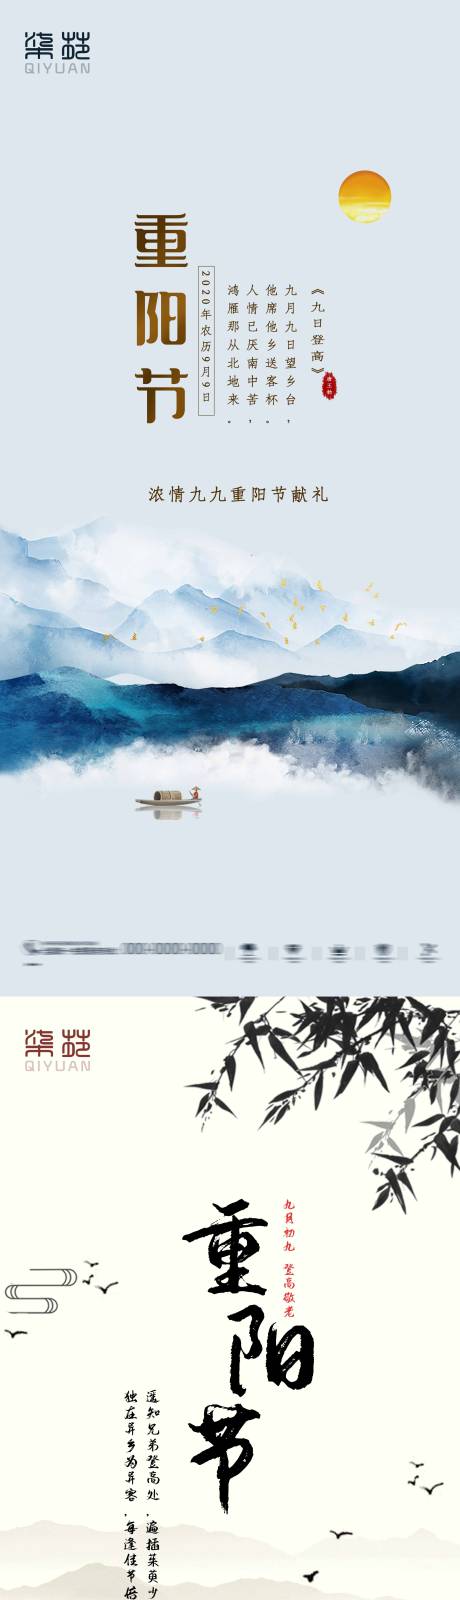 重阳节系列海报